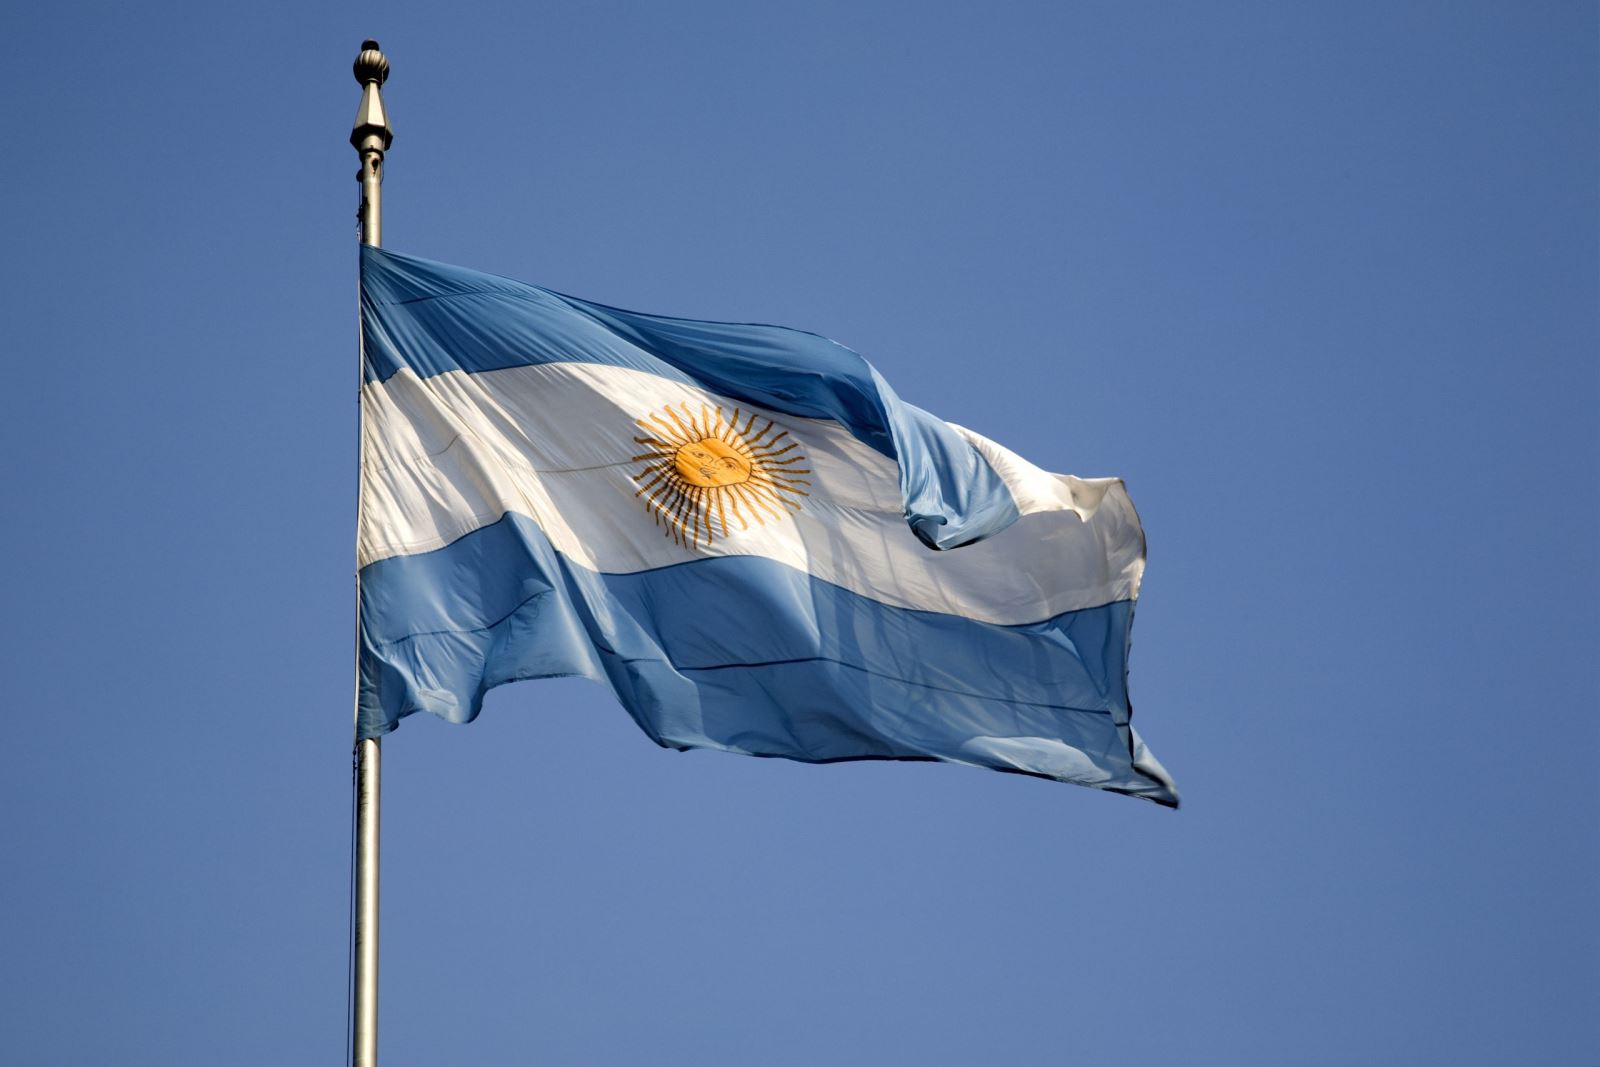 Ngày Cách mạng Tháng 5 Argentina: Ngày Cách mạng Tháng 5 là ngày kỷ niệm lịch sử vang dội của đất nước Argentina. Đó là thời điểm mà người dân nước này chiến đấu cho sự tự do và độc lập của mình. Hãy xem hình ảnh liên quan đến ngày lễ này để cảm nhận trọn vẹn những giá trị văn hóa và lịch sử của Argentina.